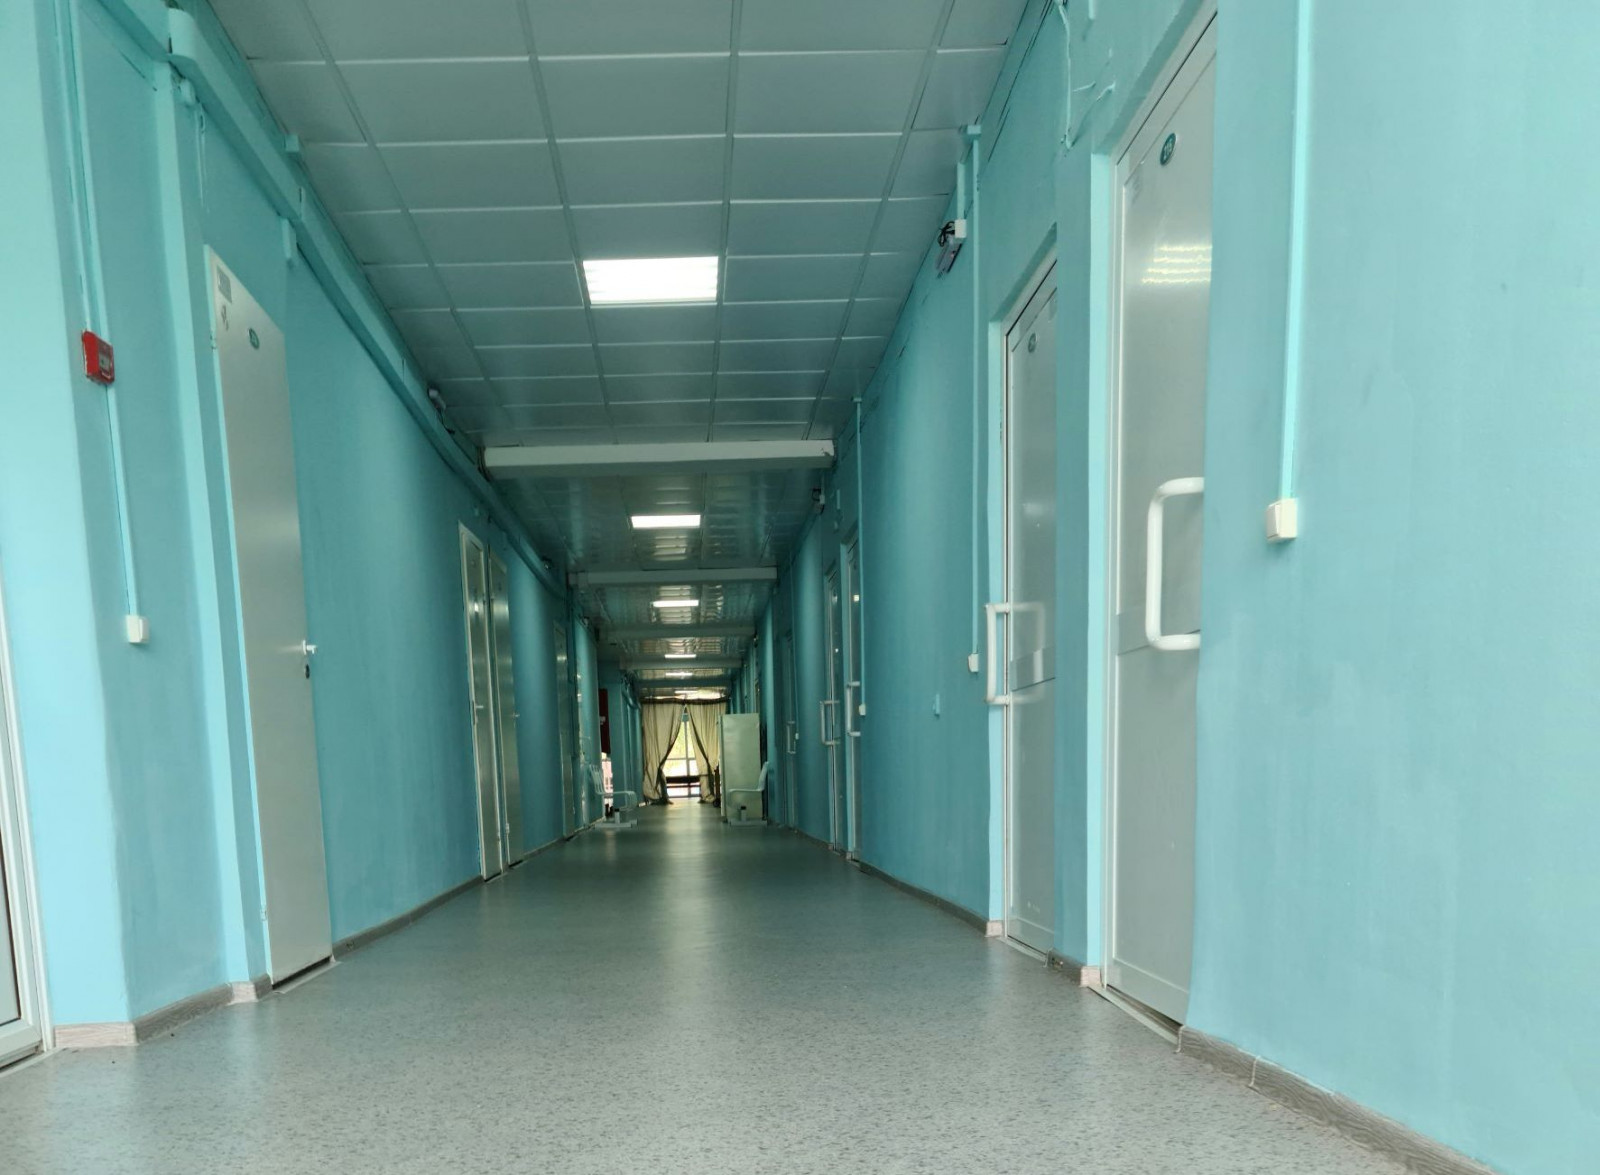 Неврологический госпиталь ветеранов войн отремонтировали в Нижнем Новгороде - фото 1